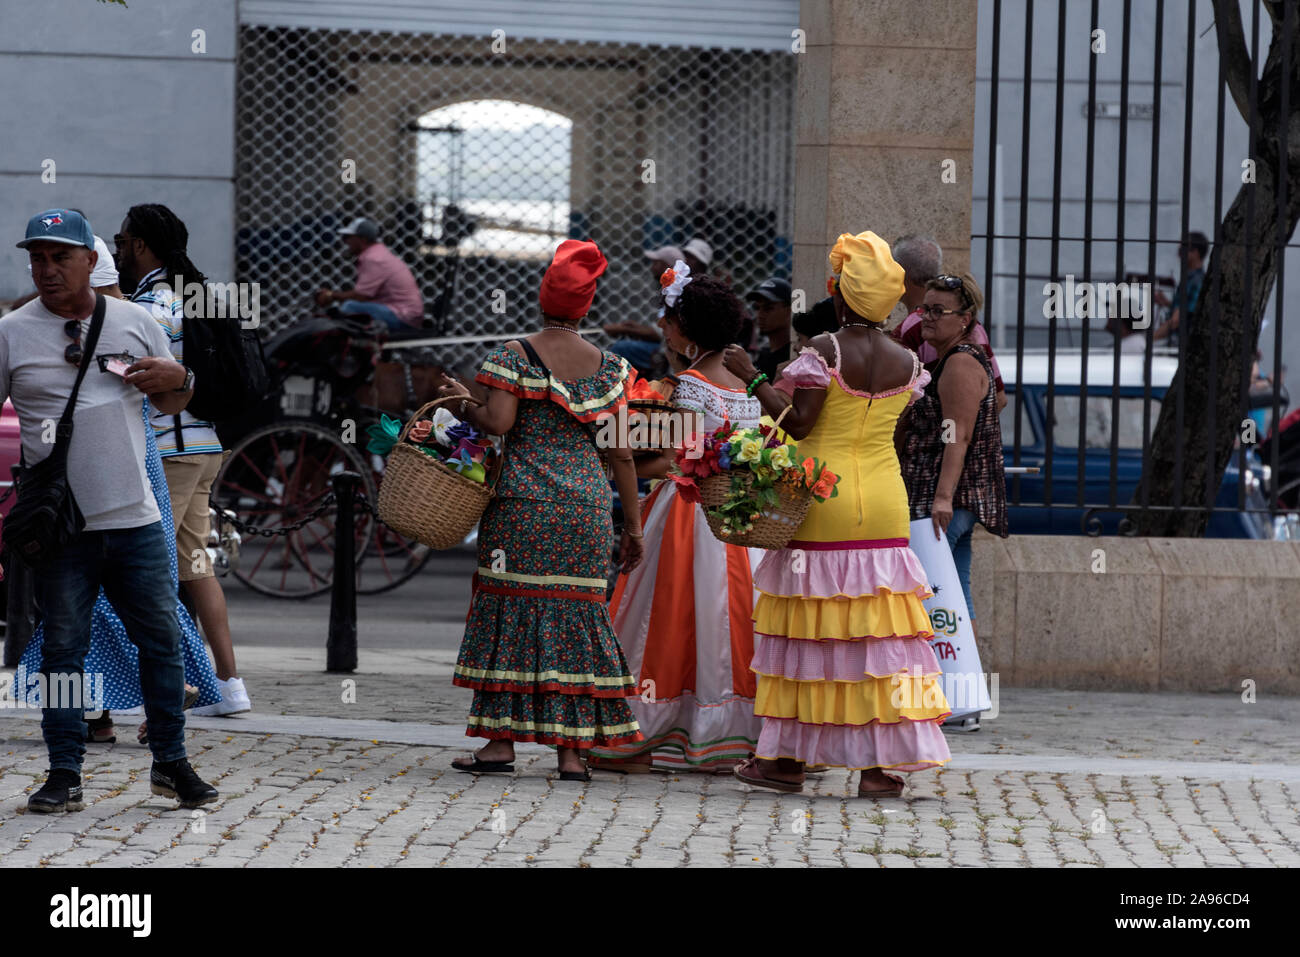 Ein Trio der kubanischen Frauen gekleidet in bunten kolonialen Kleid, bereit für Fotos zu posieren, manchmal mit großen Zigarren in den Mund Stockfoto